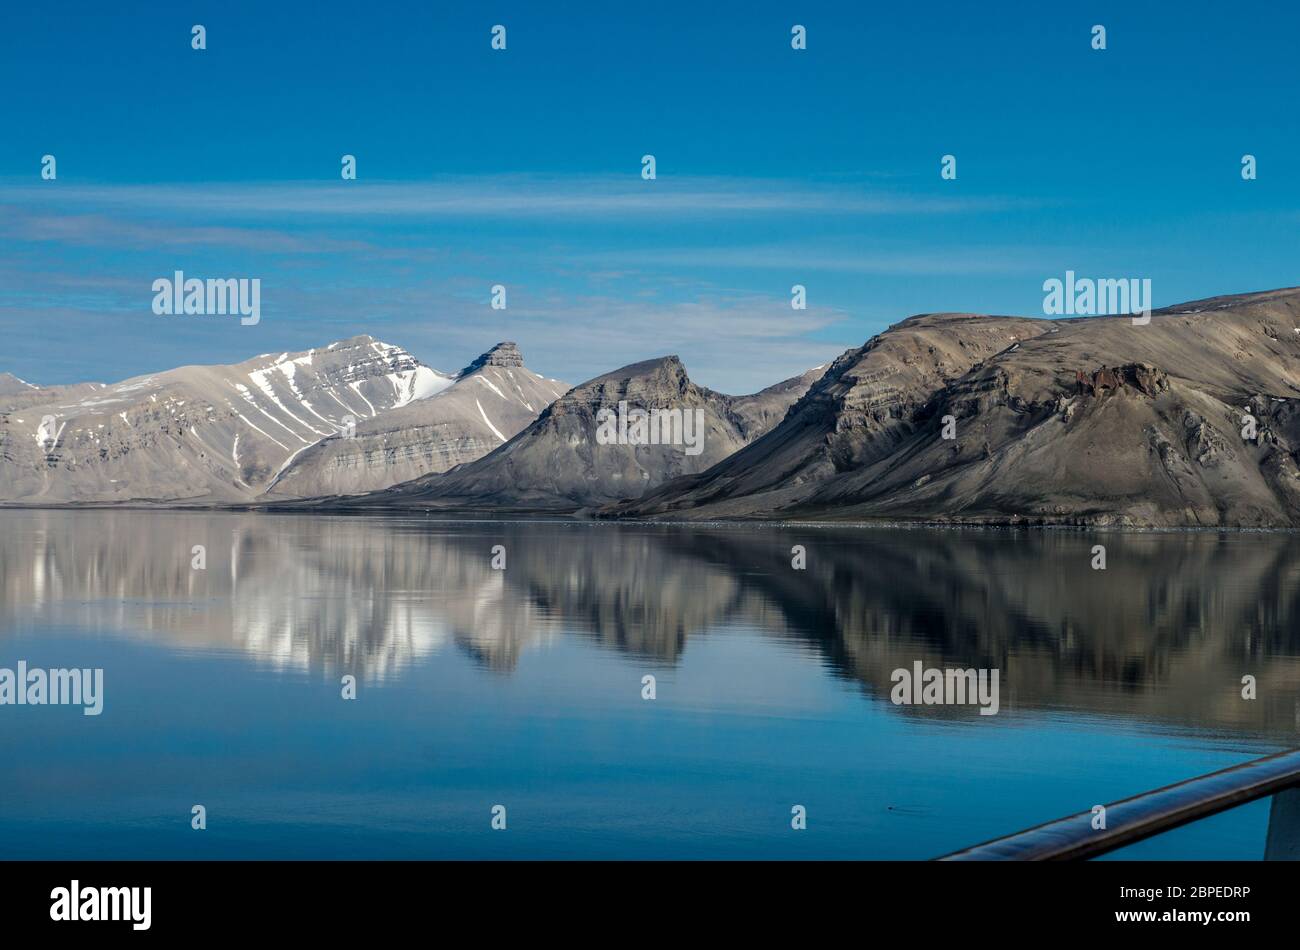 Kreuzfahrtschiffs an Kreuzfahrtschiffs in den Fjorden Norwegens mit Spiegelung von Berge im Wasser Foto Stock